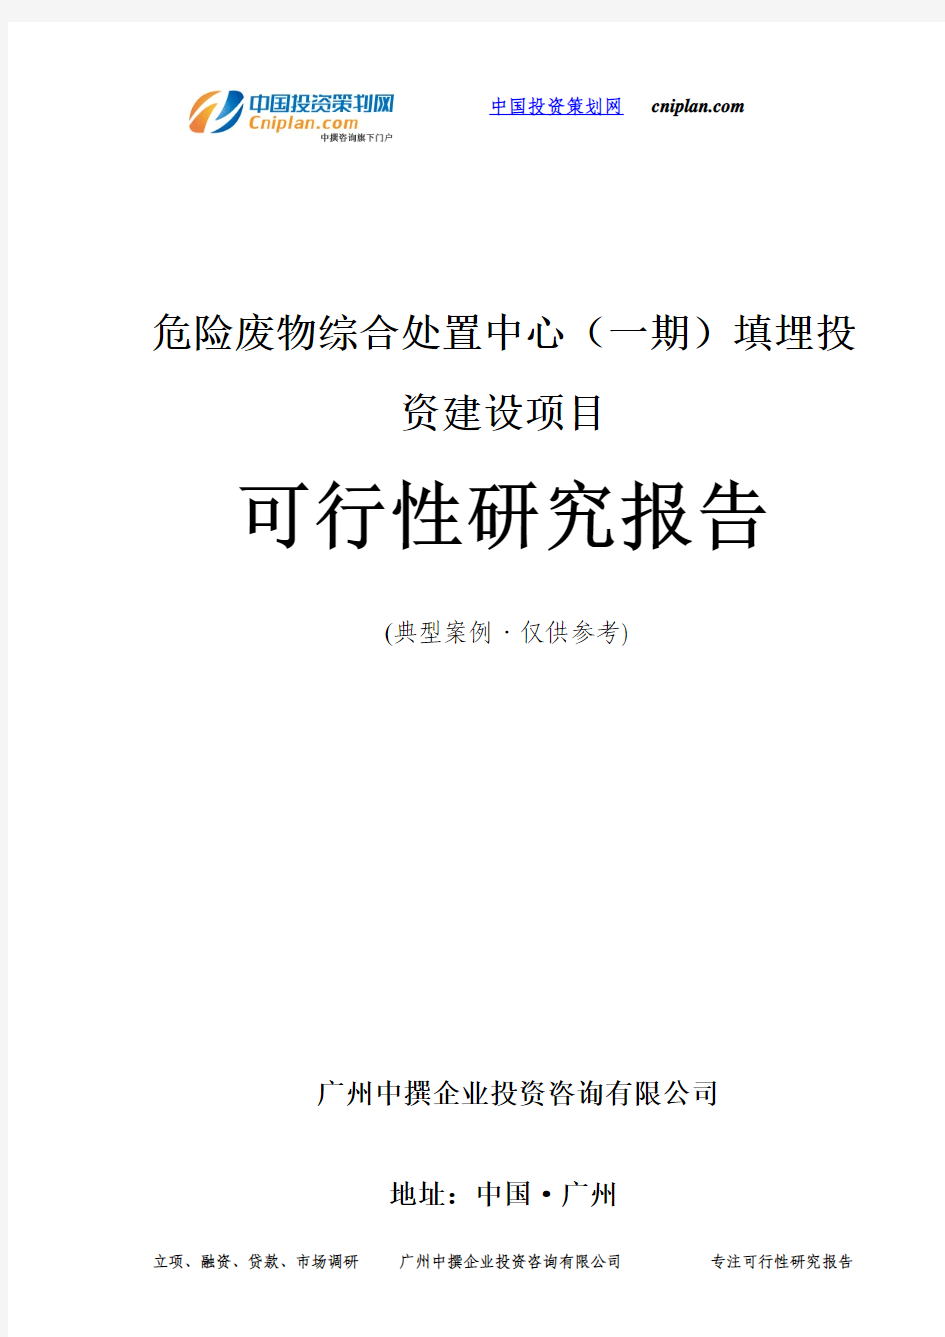 危险废物综合处置中心(一期)填埋投资建设项目可行性研究报告-广州中撰咨询